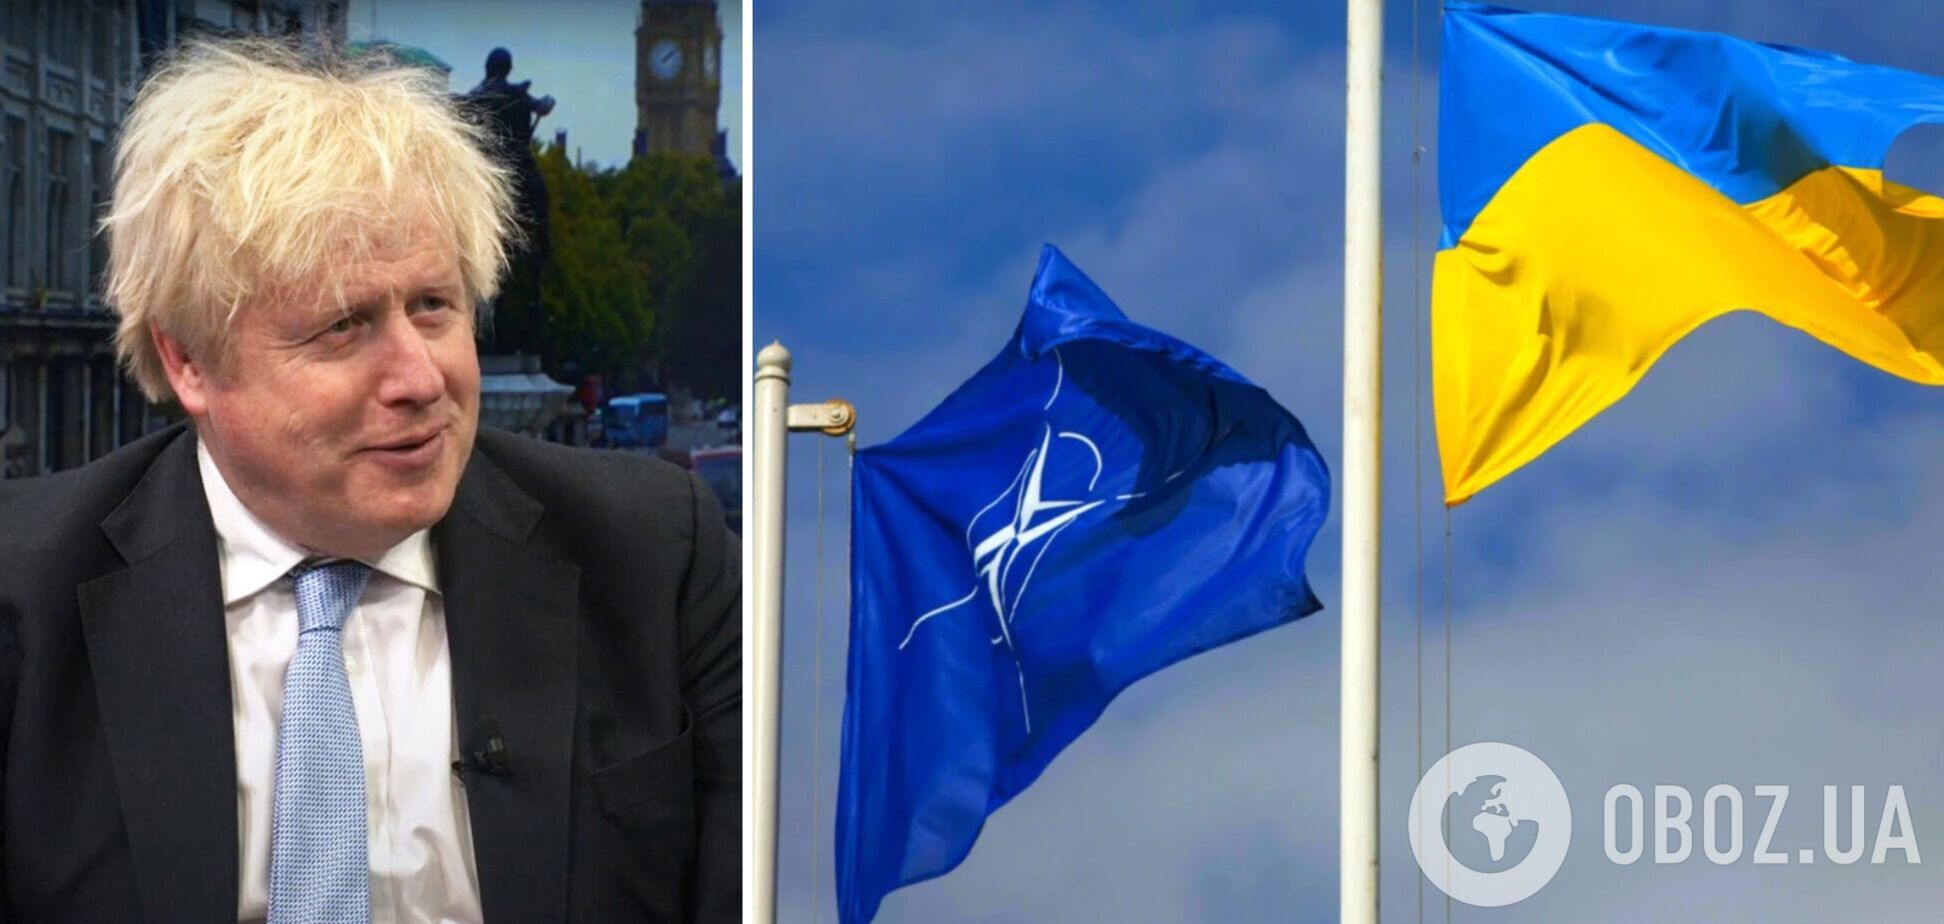 Росія втратила право протестувати проти членства України в НАТО, – Джонсон на Kyiv Jewish Forum